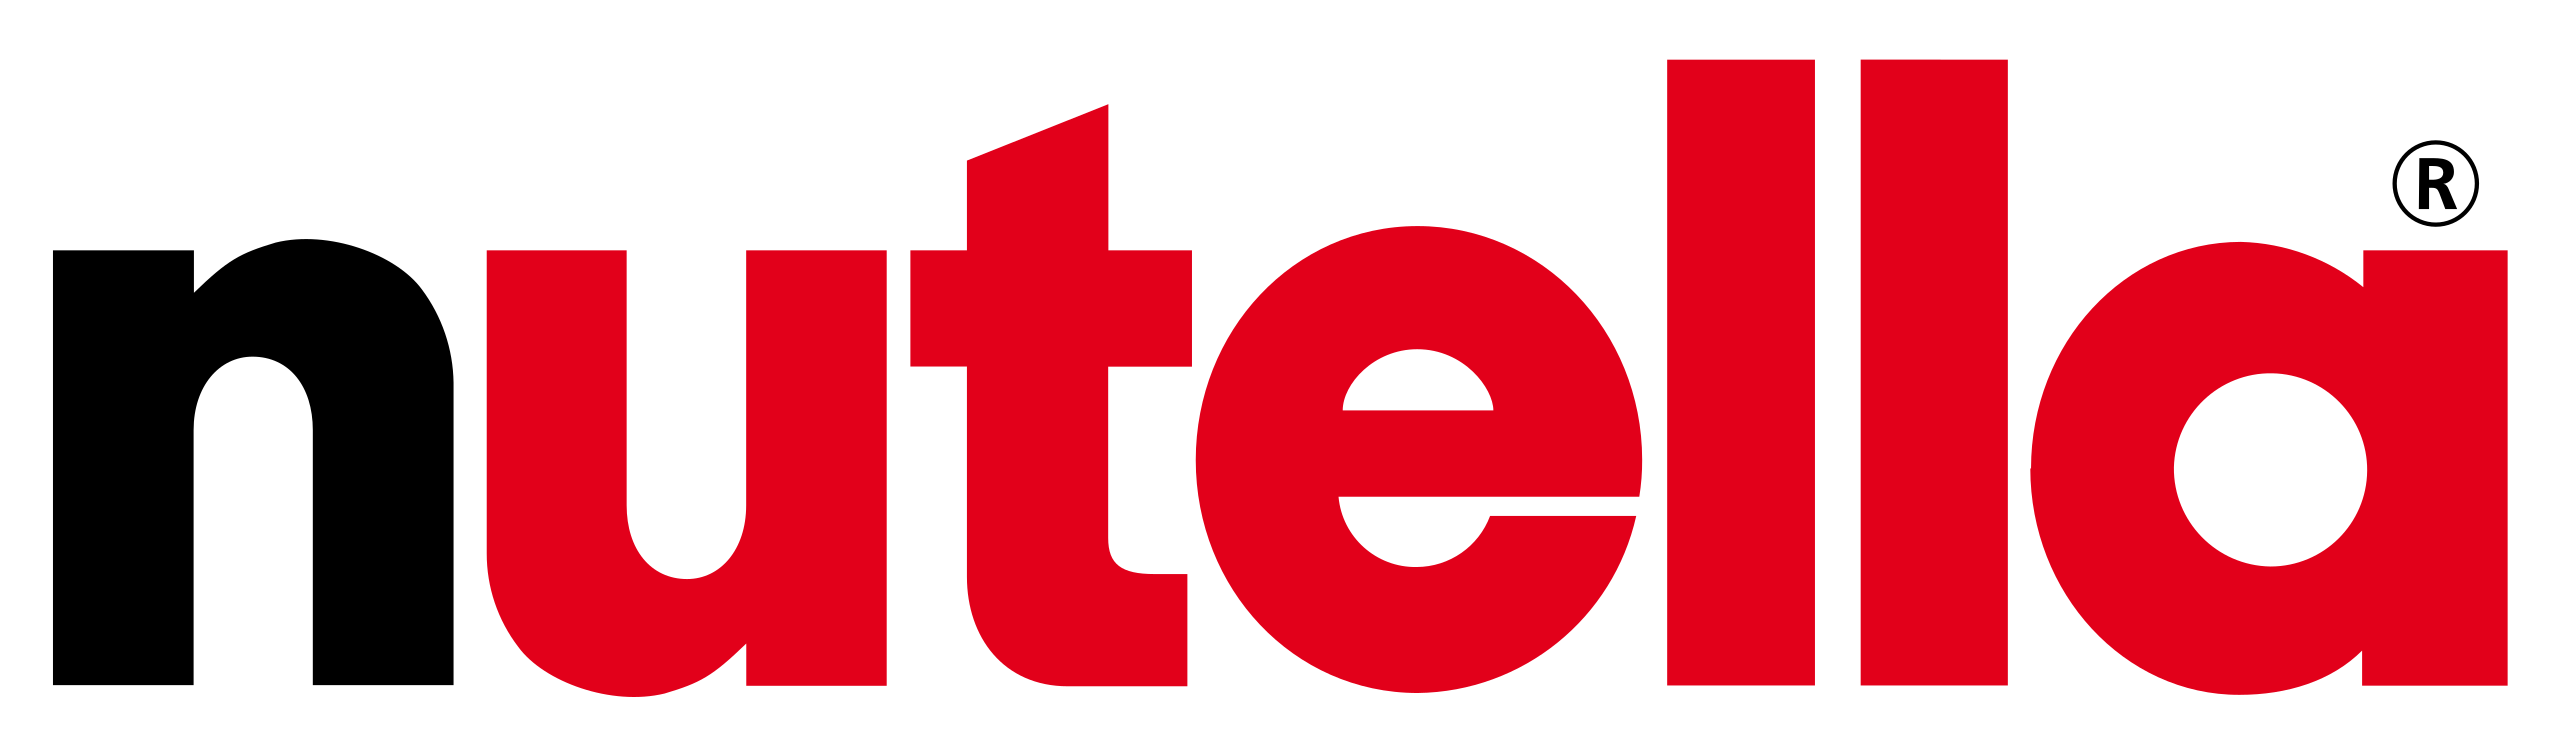 Logo Nutella.svg